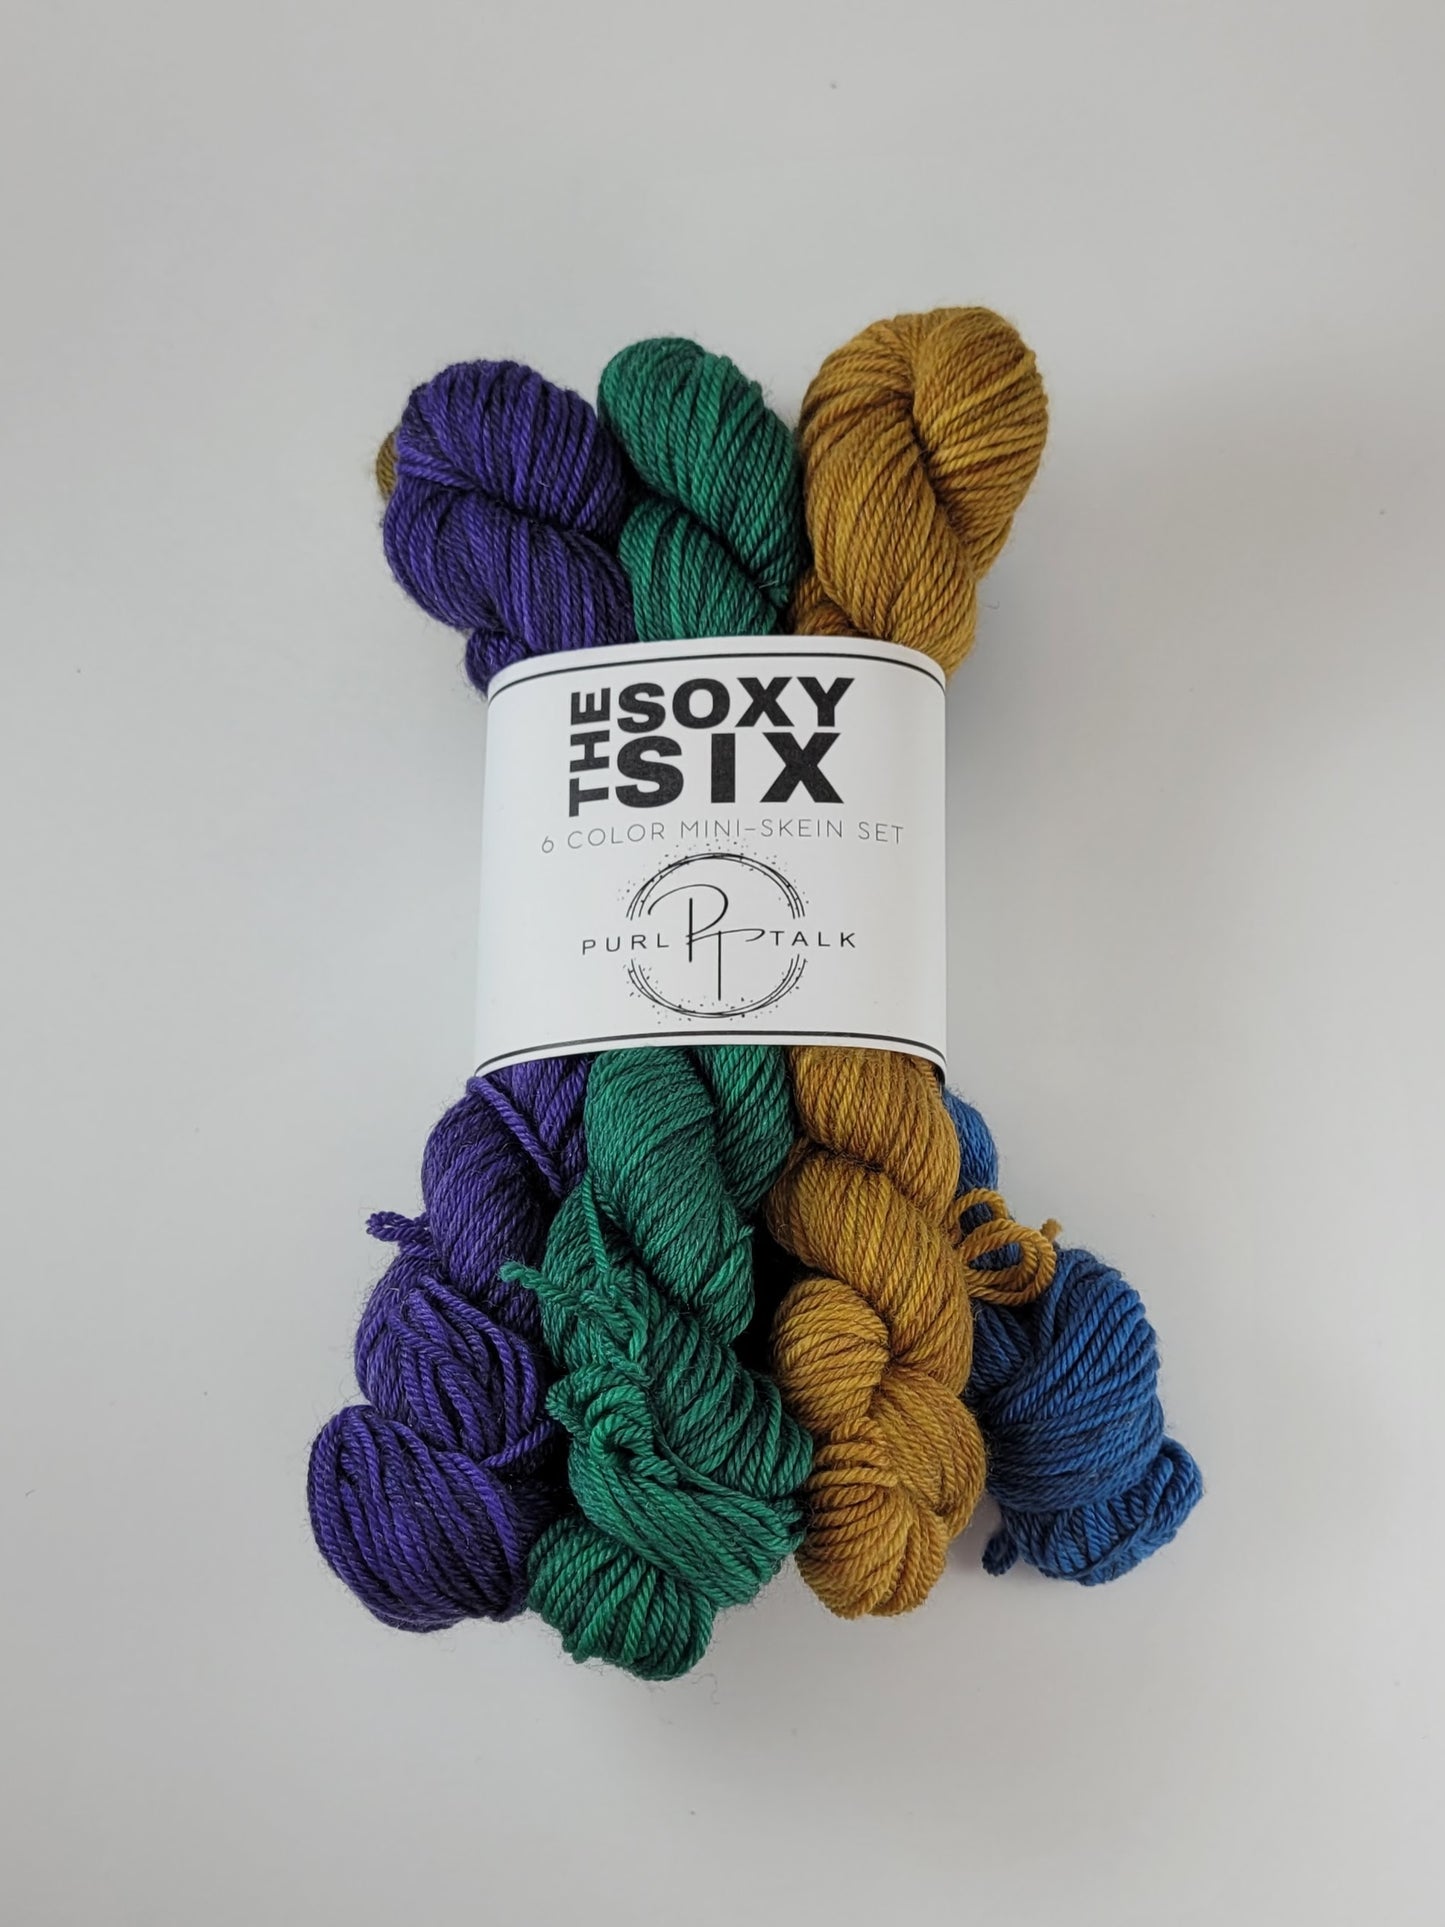 Soxy Six Mini Set, Color: Jewel Tones